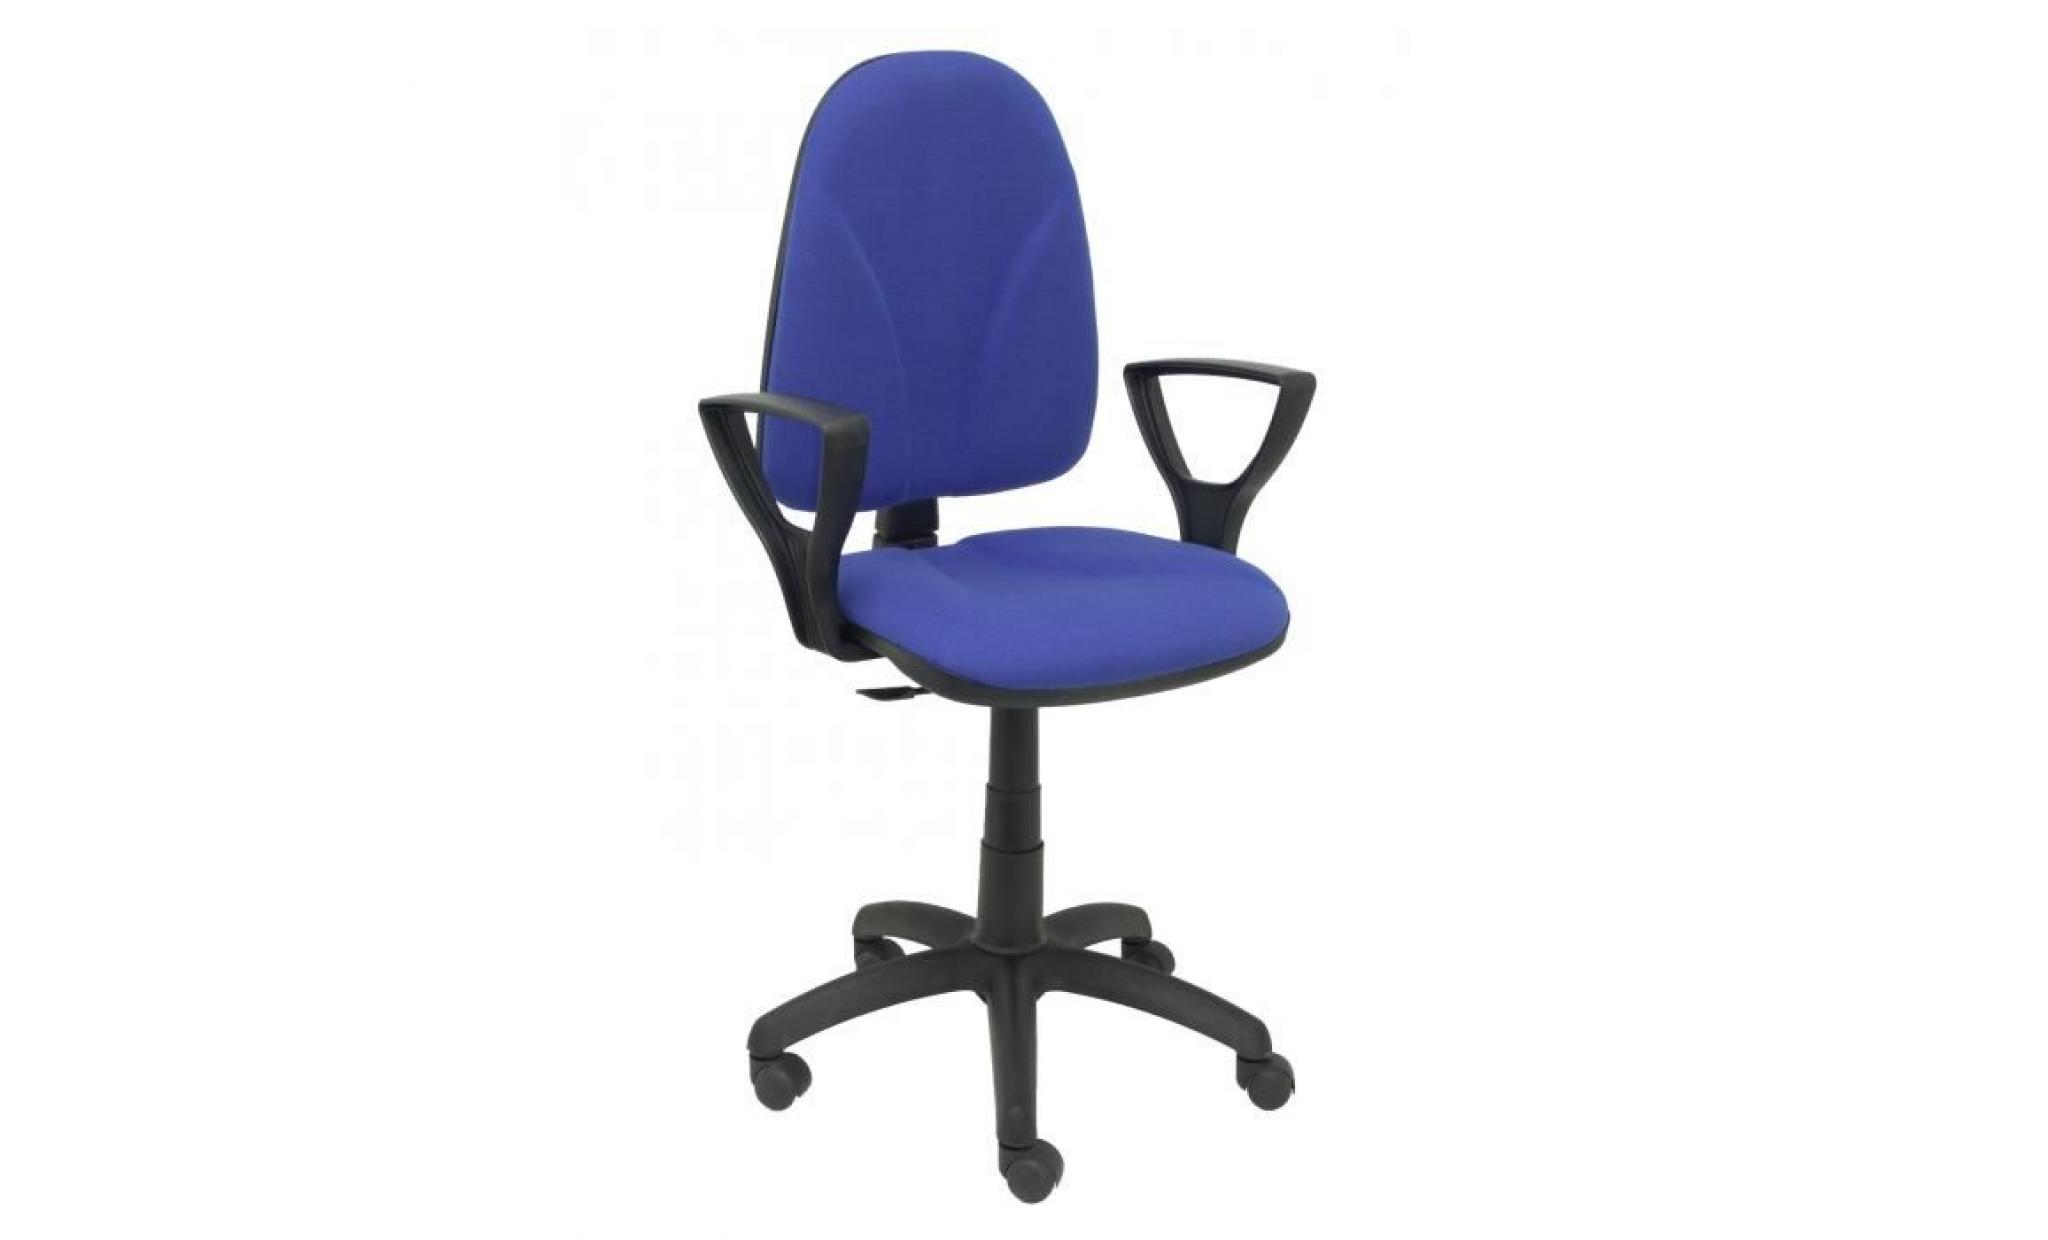 modello 1006az algarra   sedia da ufficio ergonomica con meccanismo di contatto permanente e regolabile in altezza   sedile e